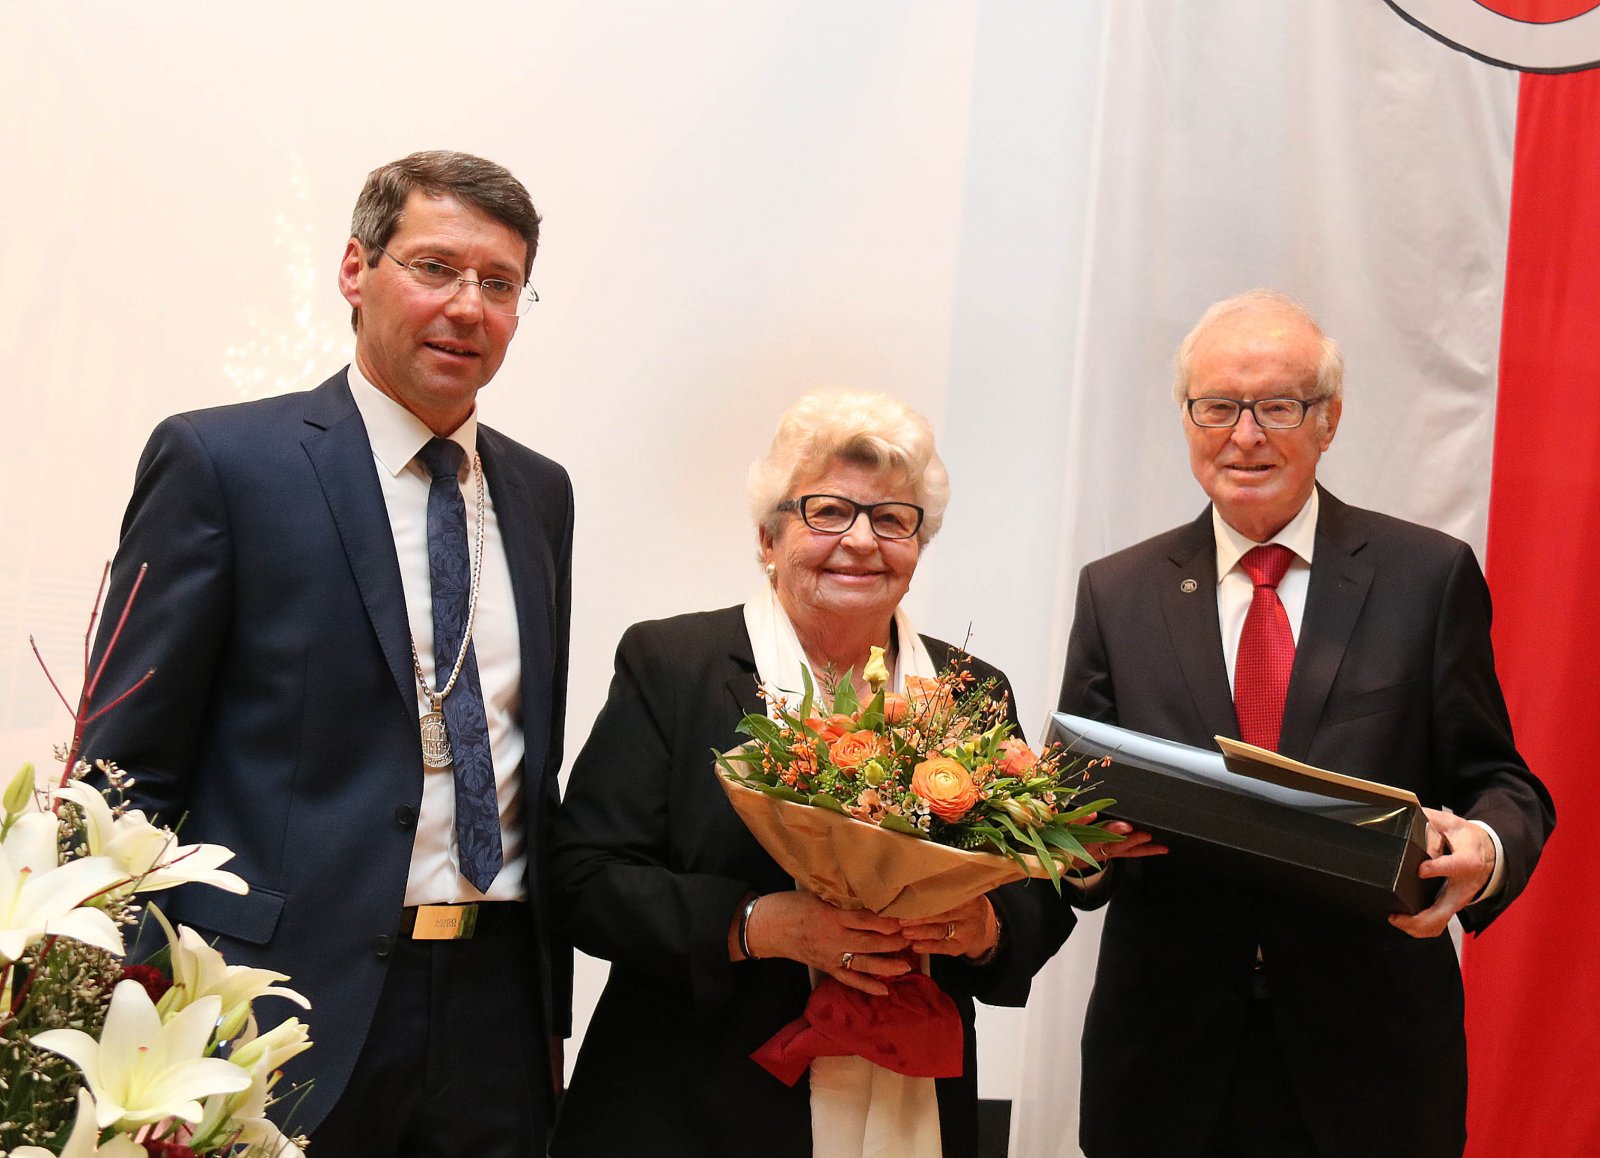 Rudolf Zimmermann mit Ehefrau Magdalena und Bürgermeister Metz, Bild: H. Birkle